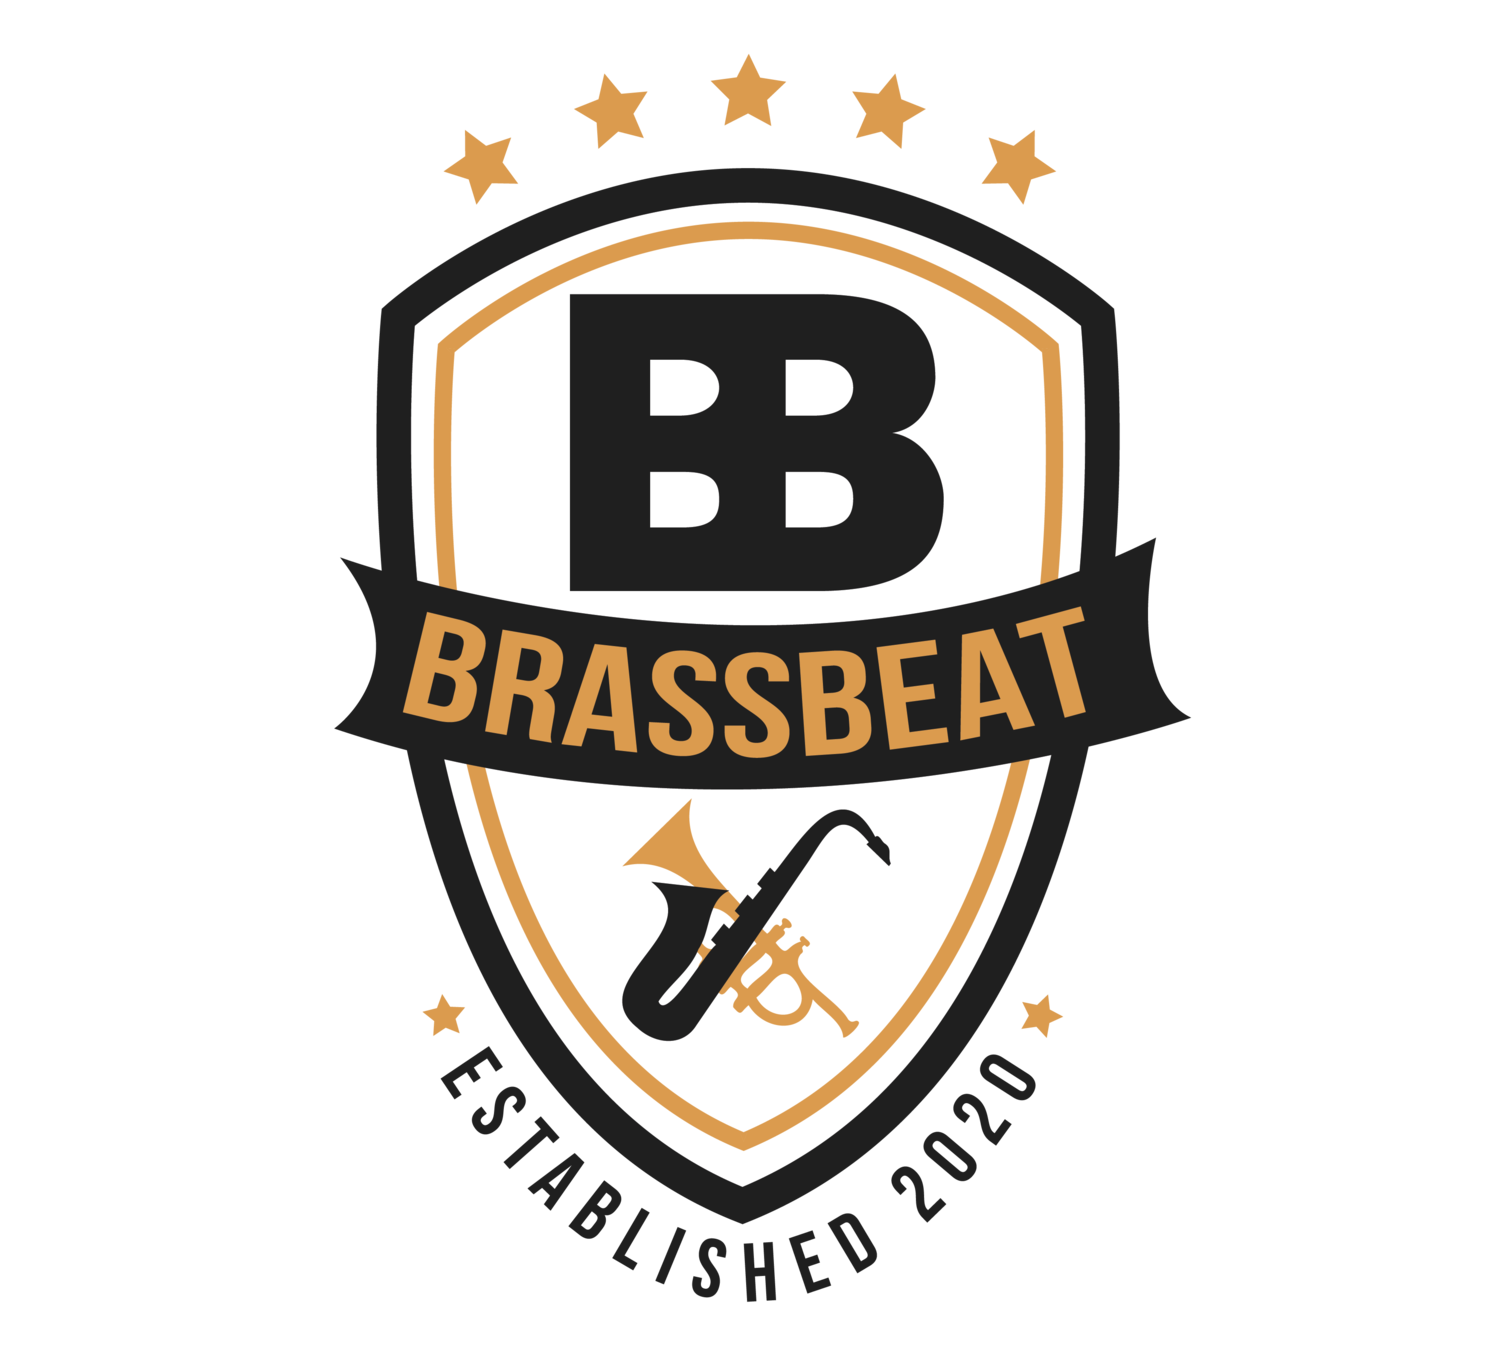 (c) Brassbeat.at